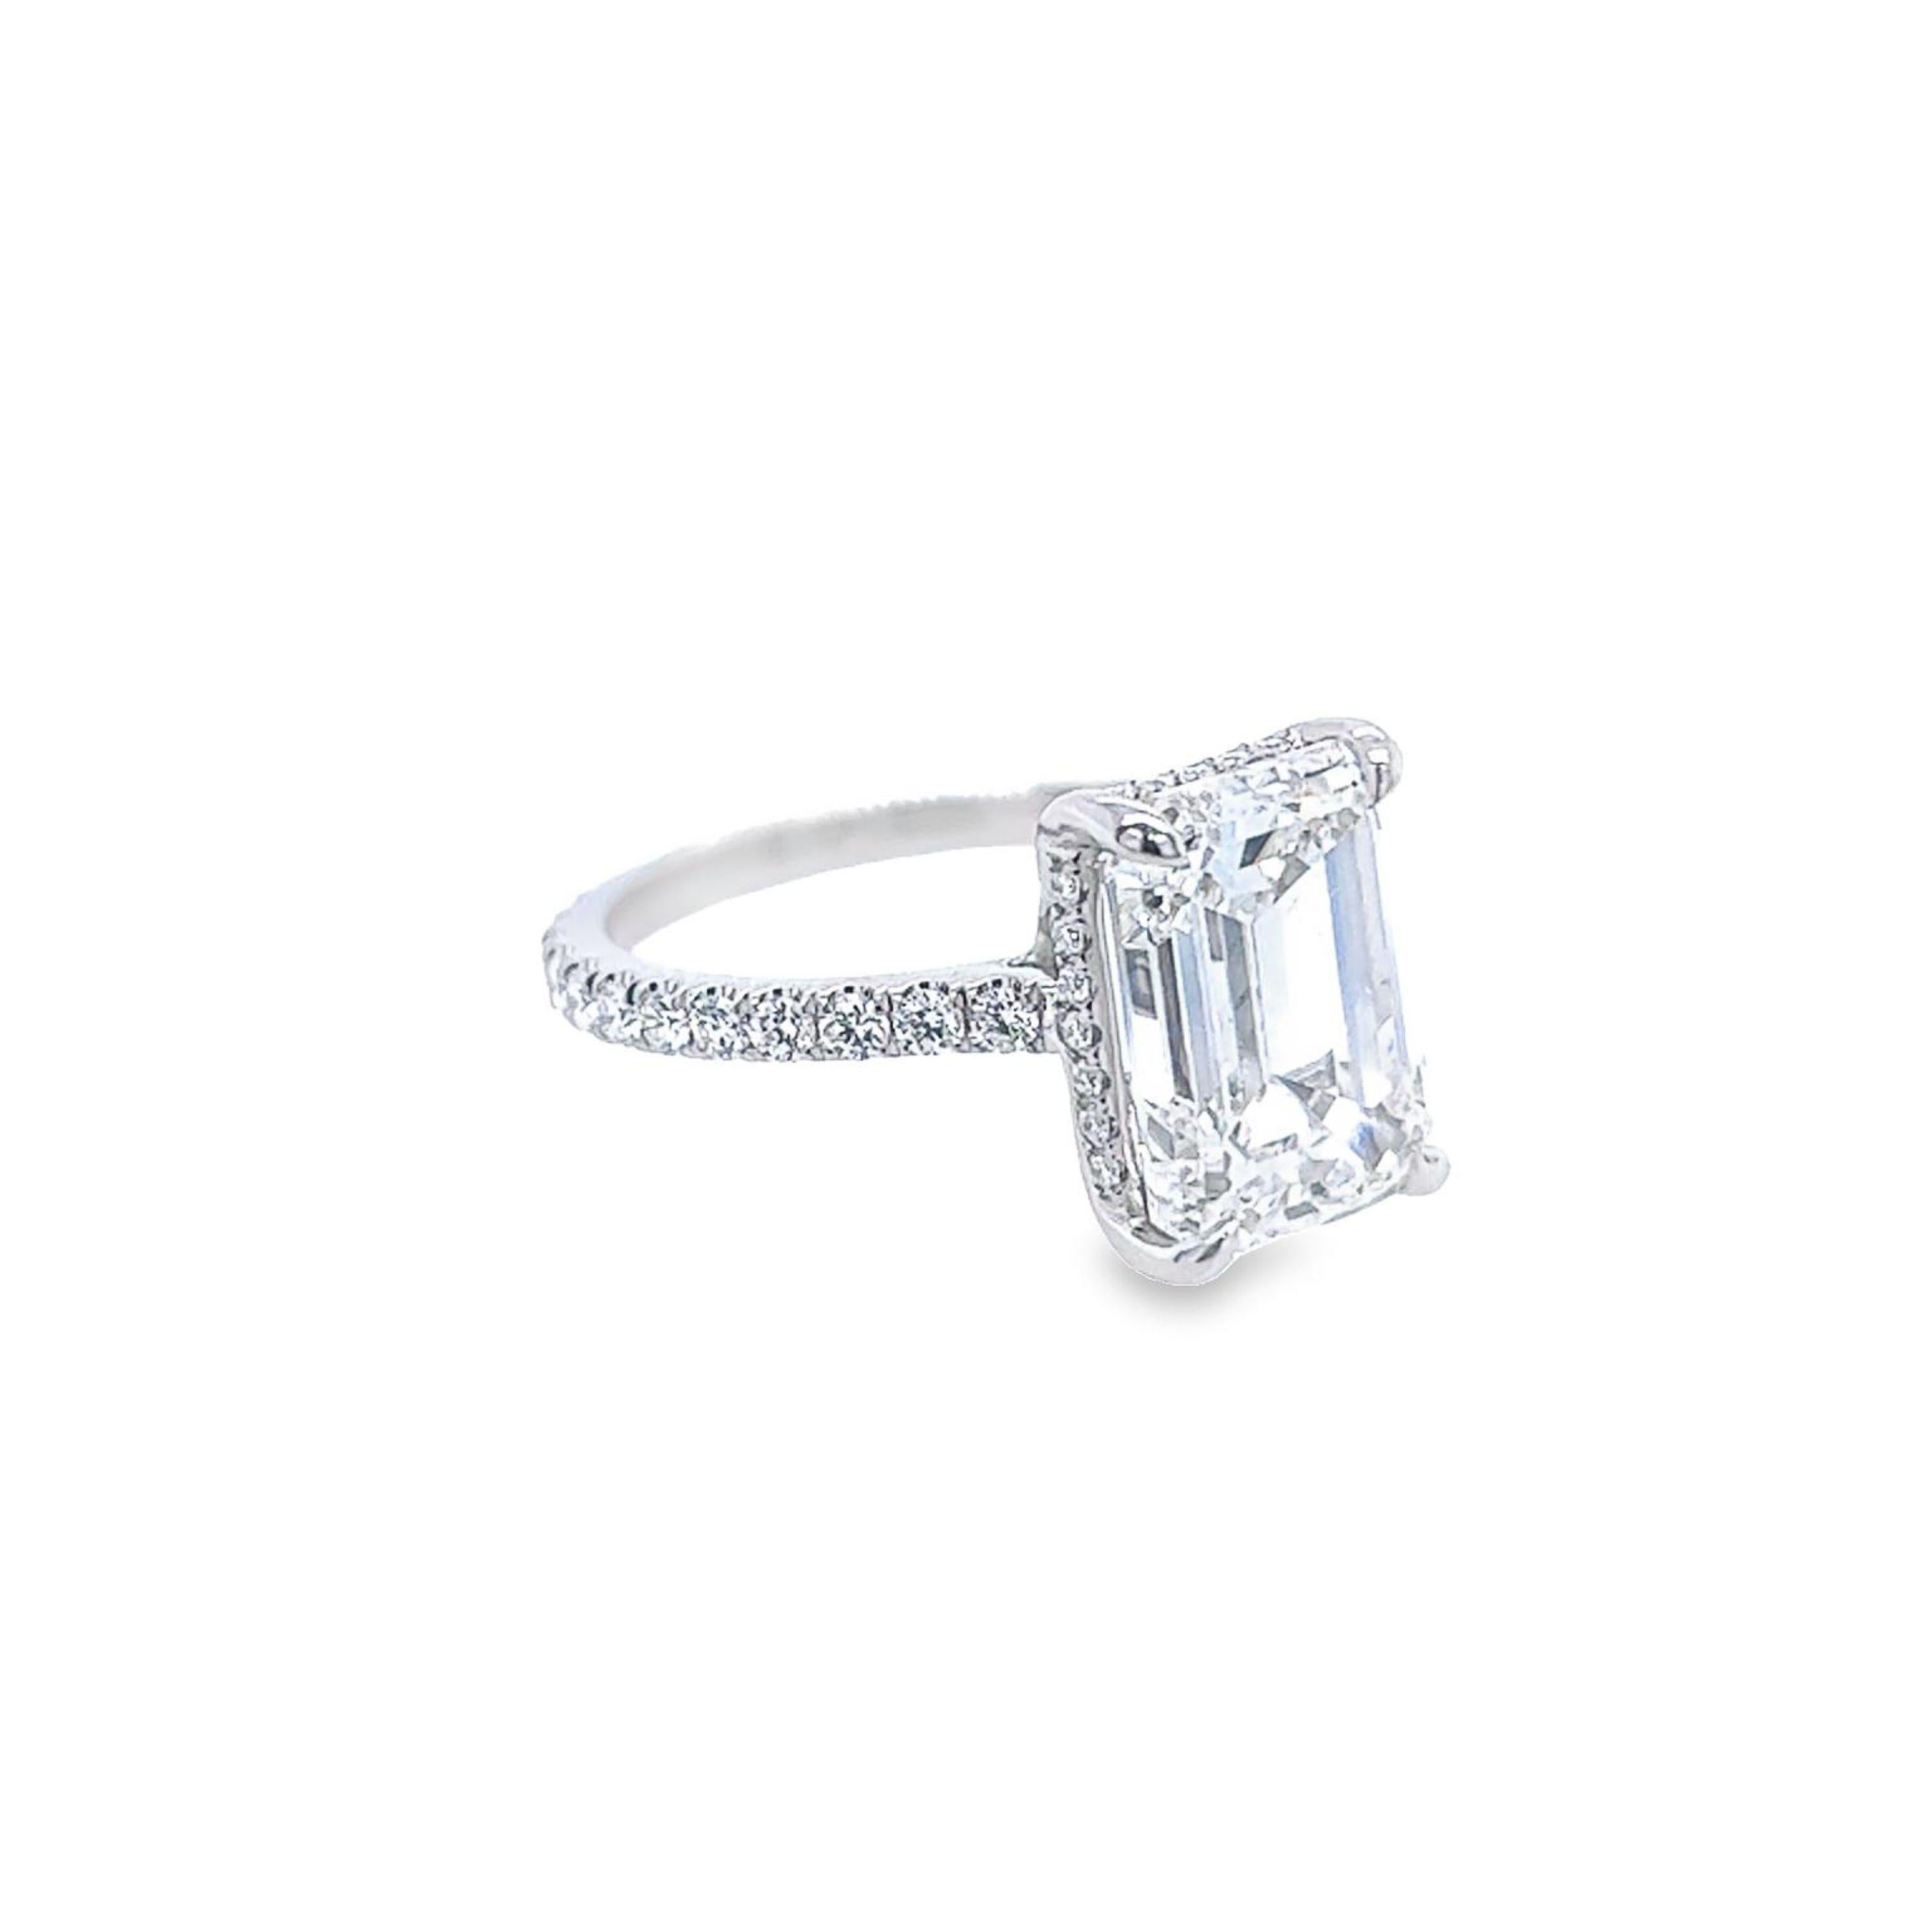 David Rosenberg 5.41 Carat Emerald Cut GIA Diamond Engagement Ring 1